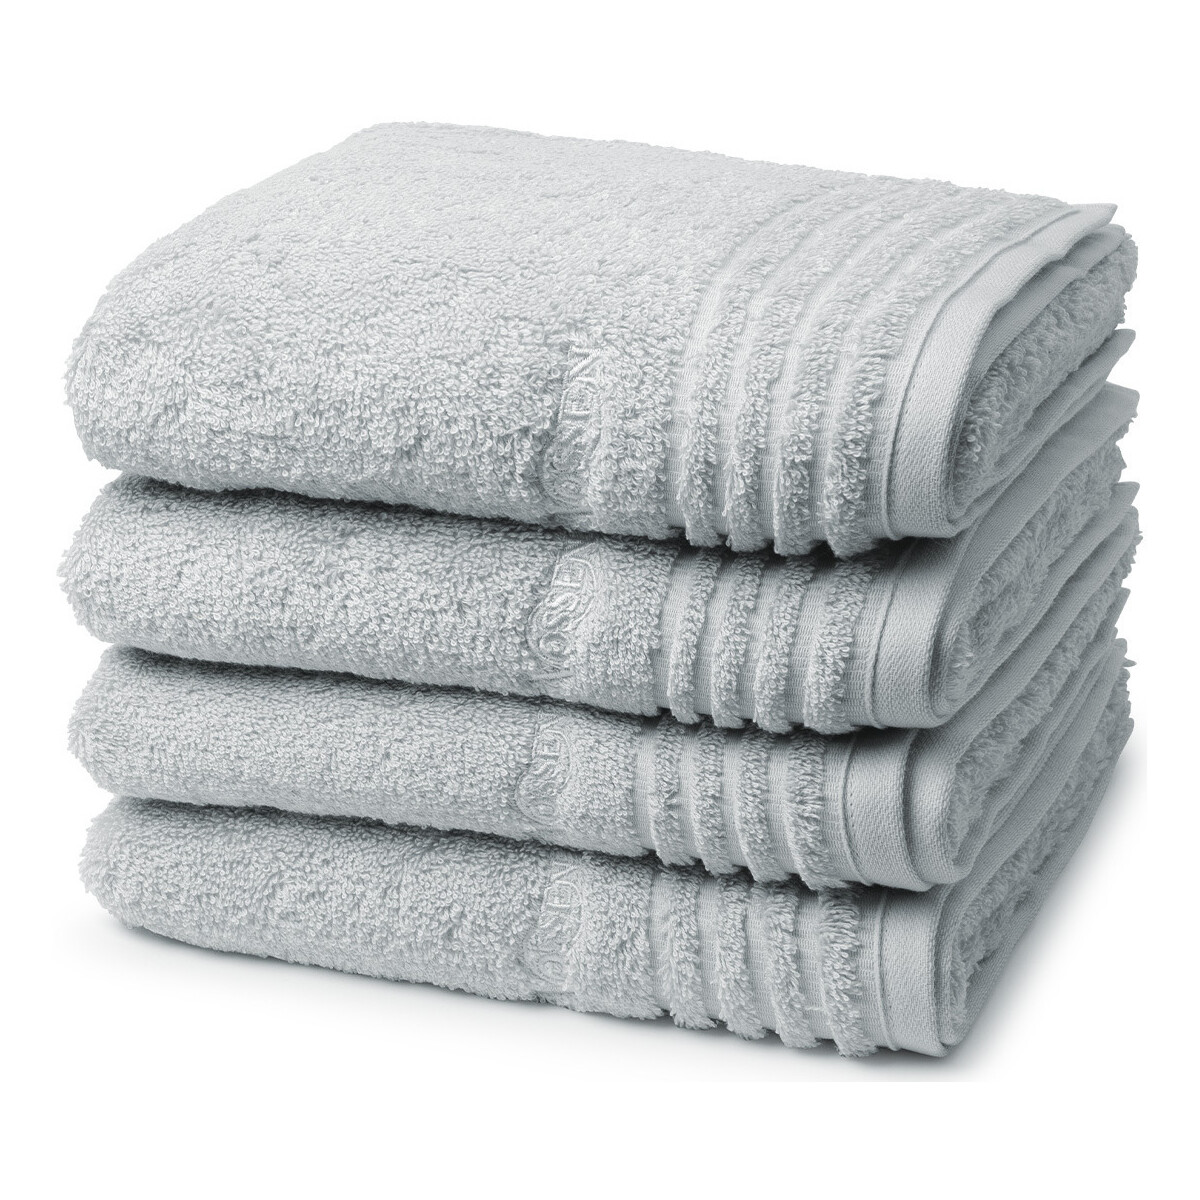 Home Handtuch und Waschlappen Vossen Vienna Style Supersoft Grau